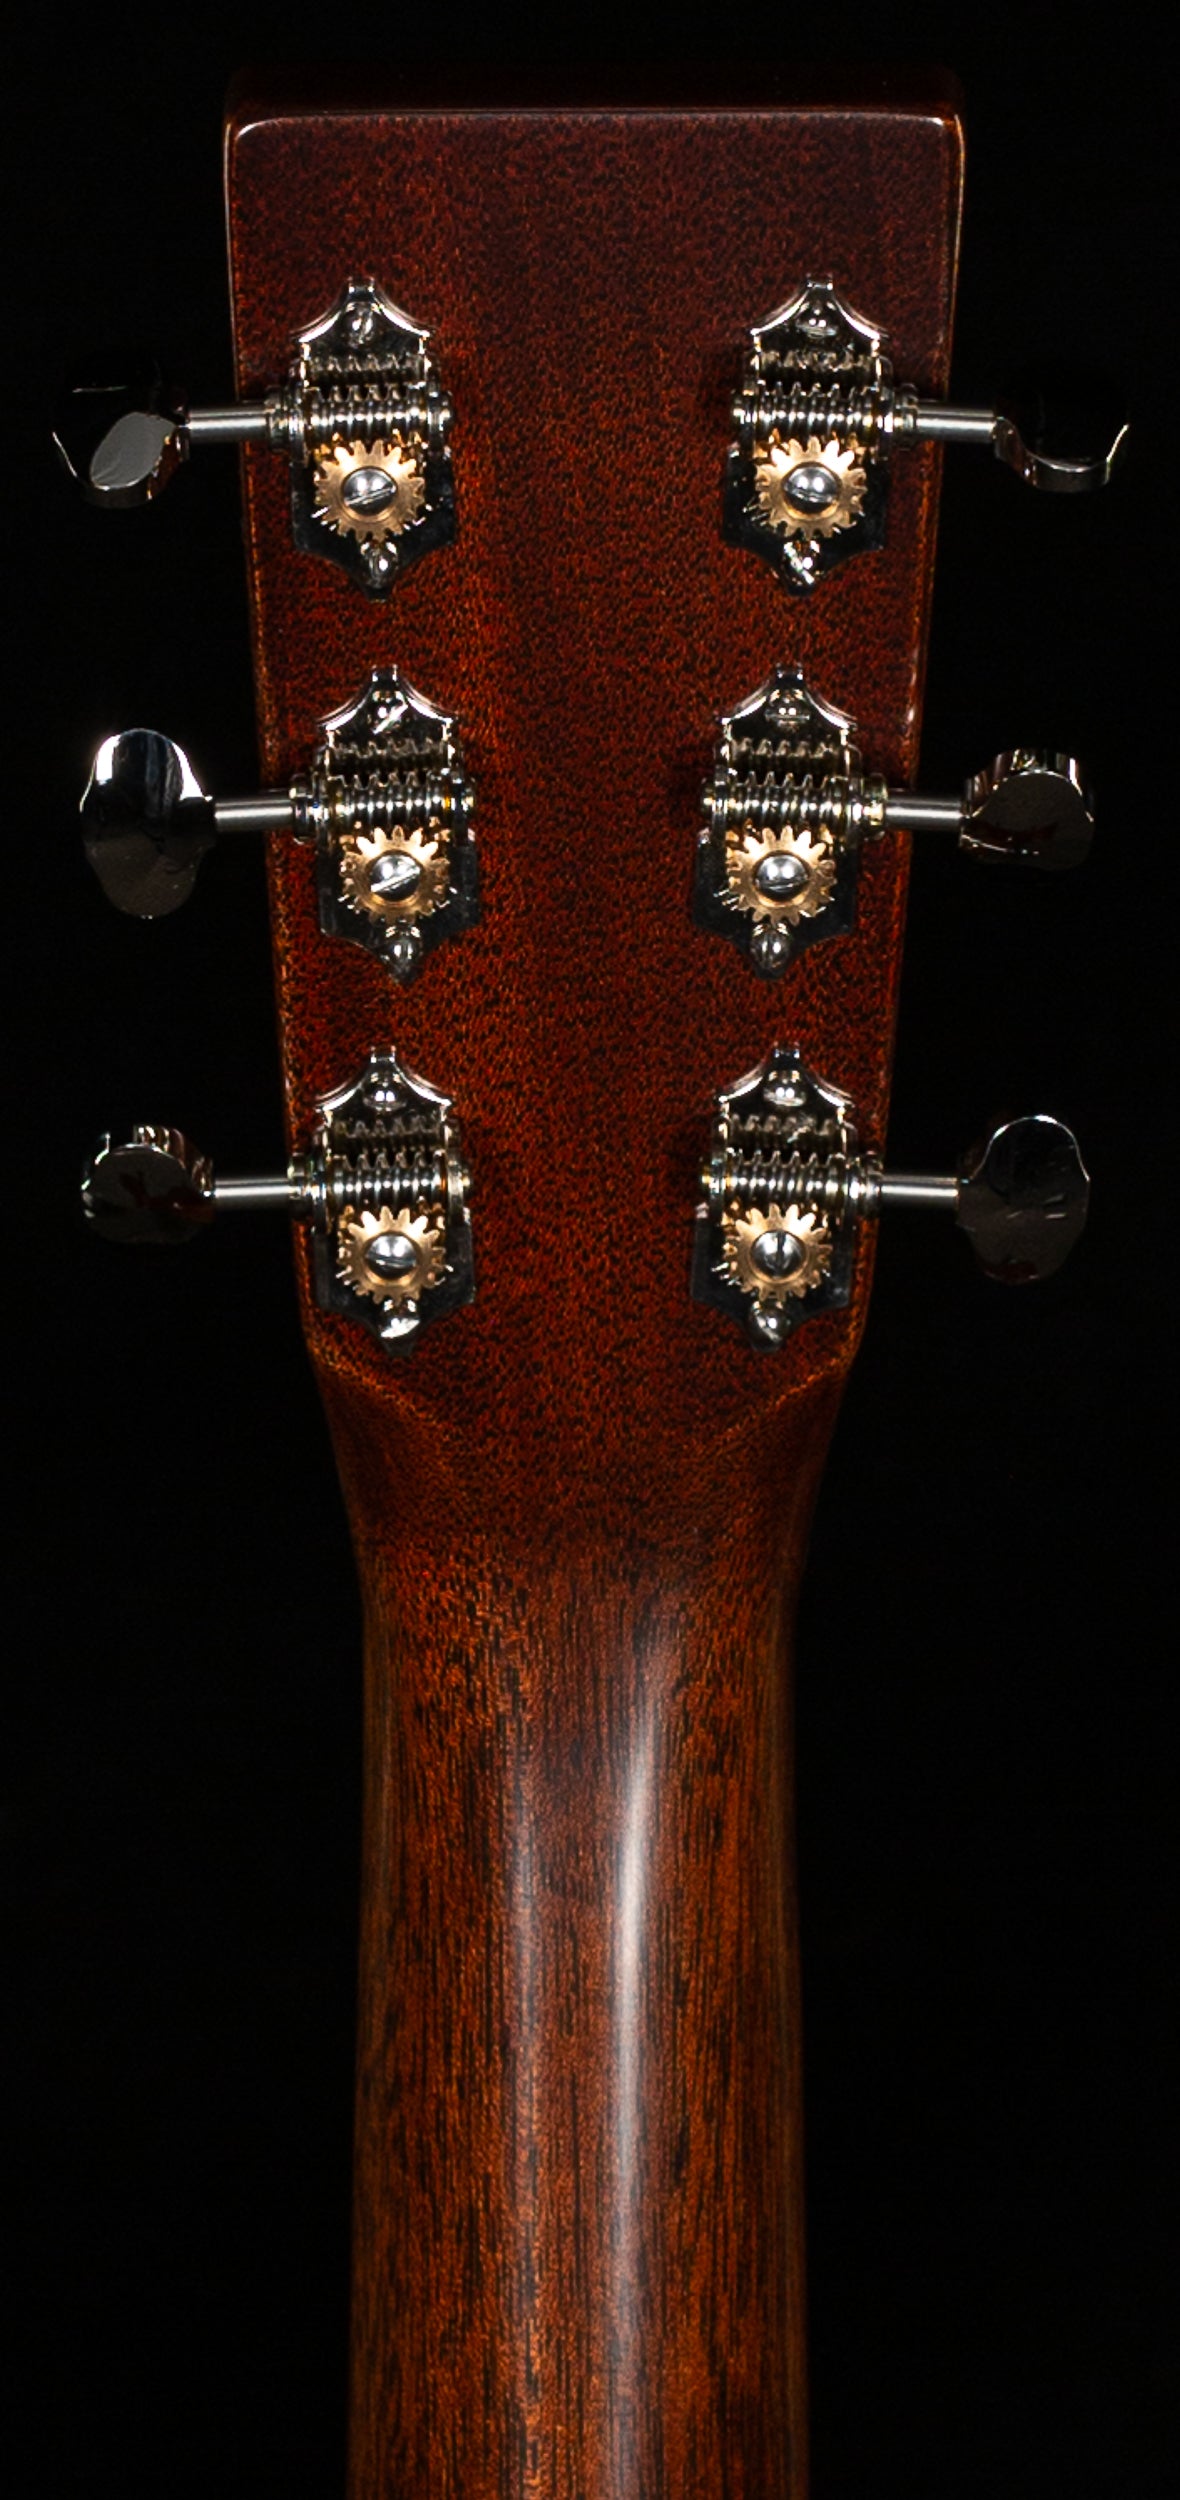 Martin D-18 Authentic 1937 VTS Acoustic Guitar